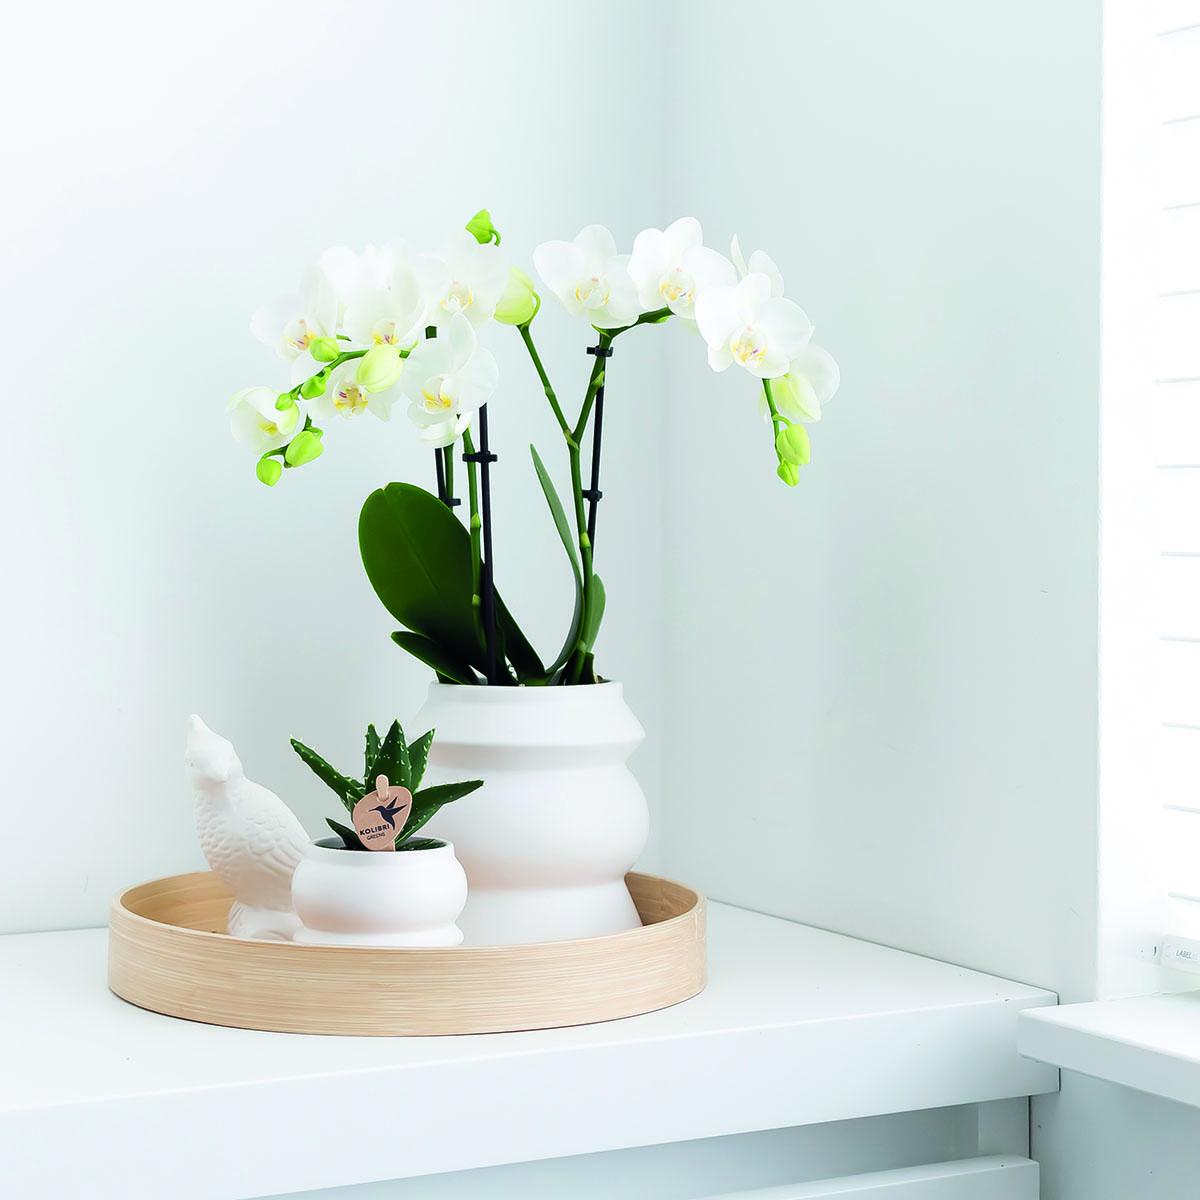 Livraison plante Orchidée Phalaenopsis blanche - Lot de 2